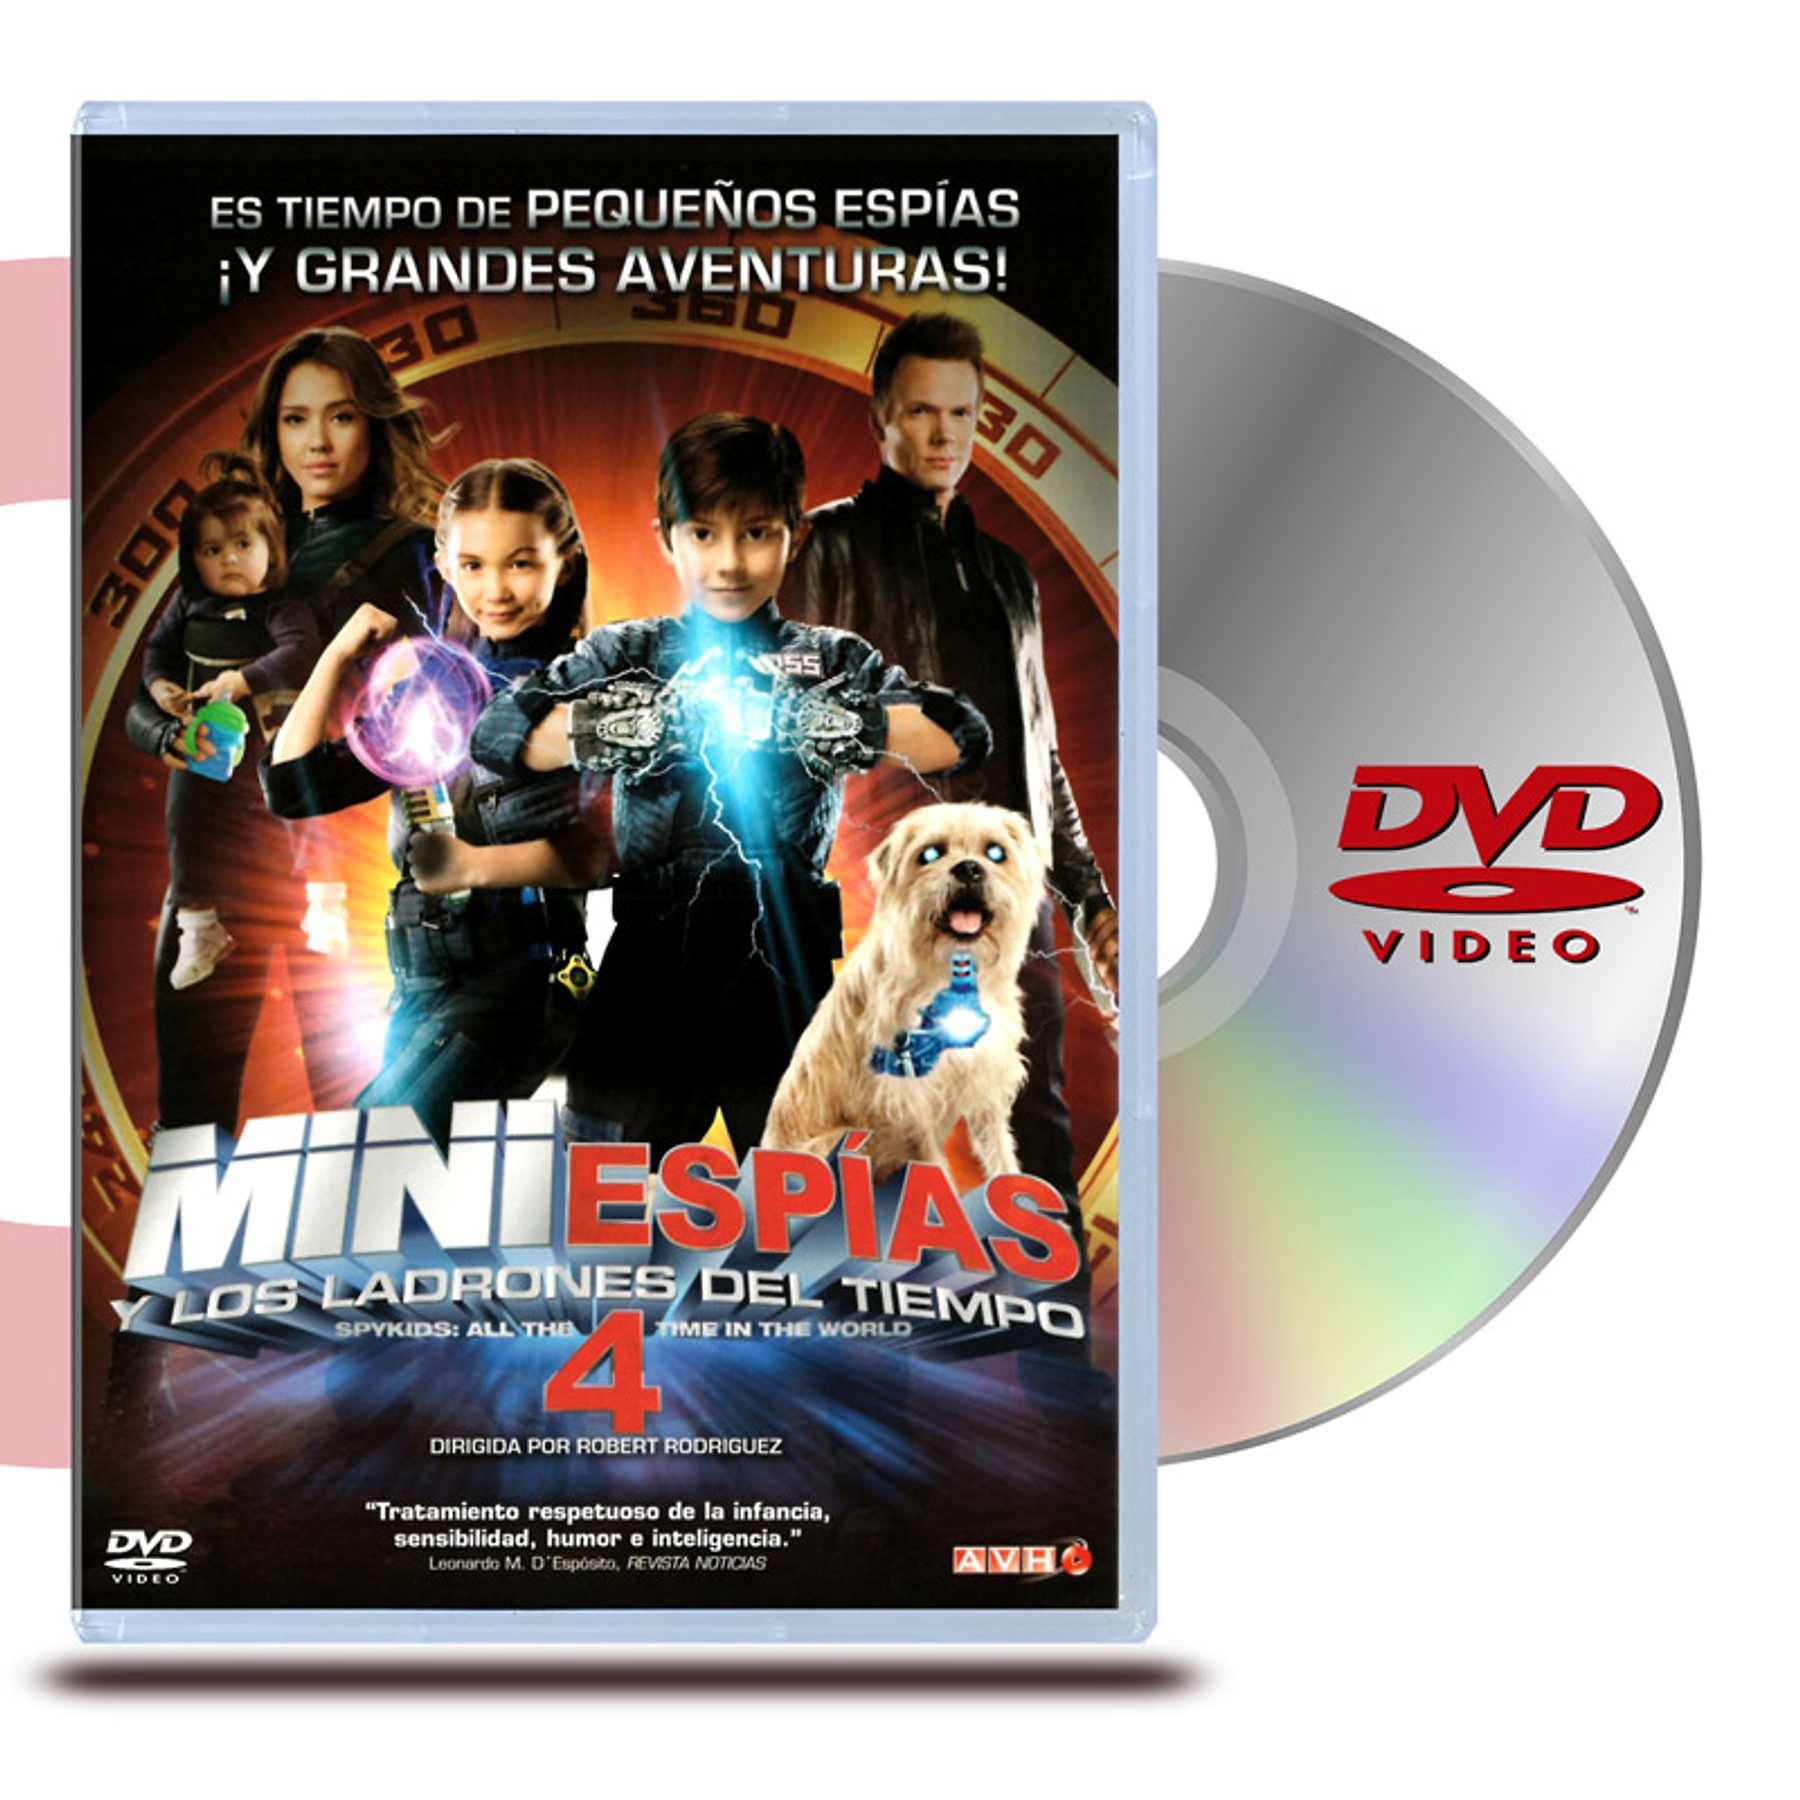 DVD MINI ESPIAS 4: Y LOS LADRONES DEL TIEMPO